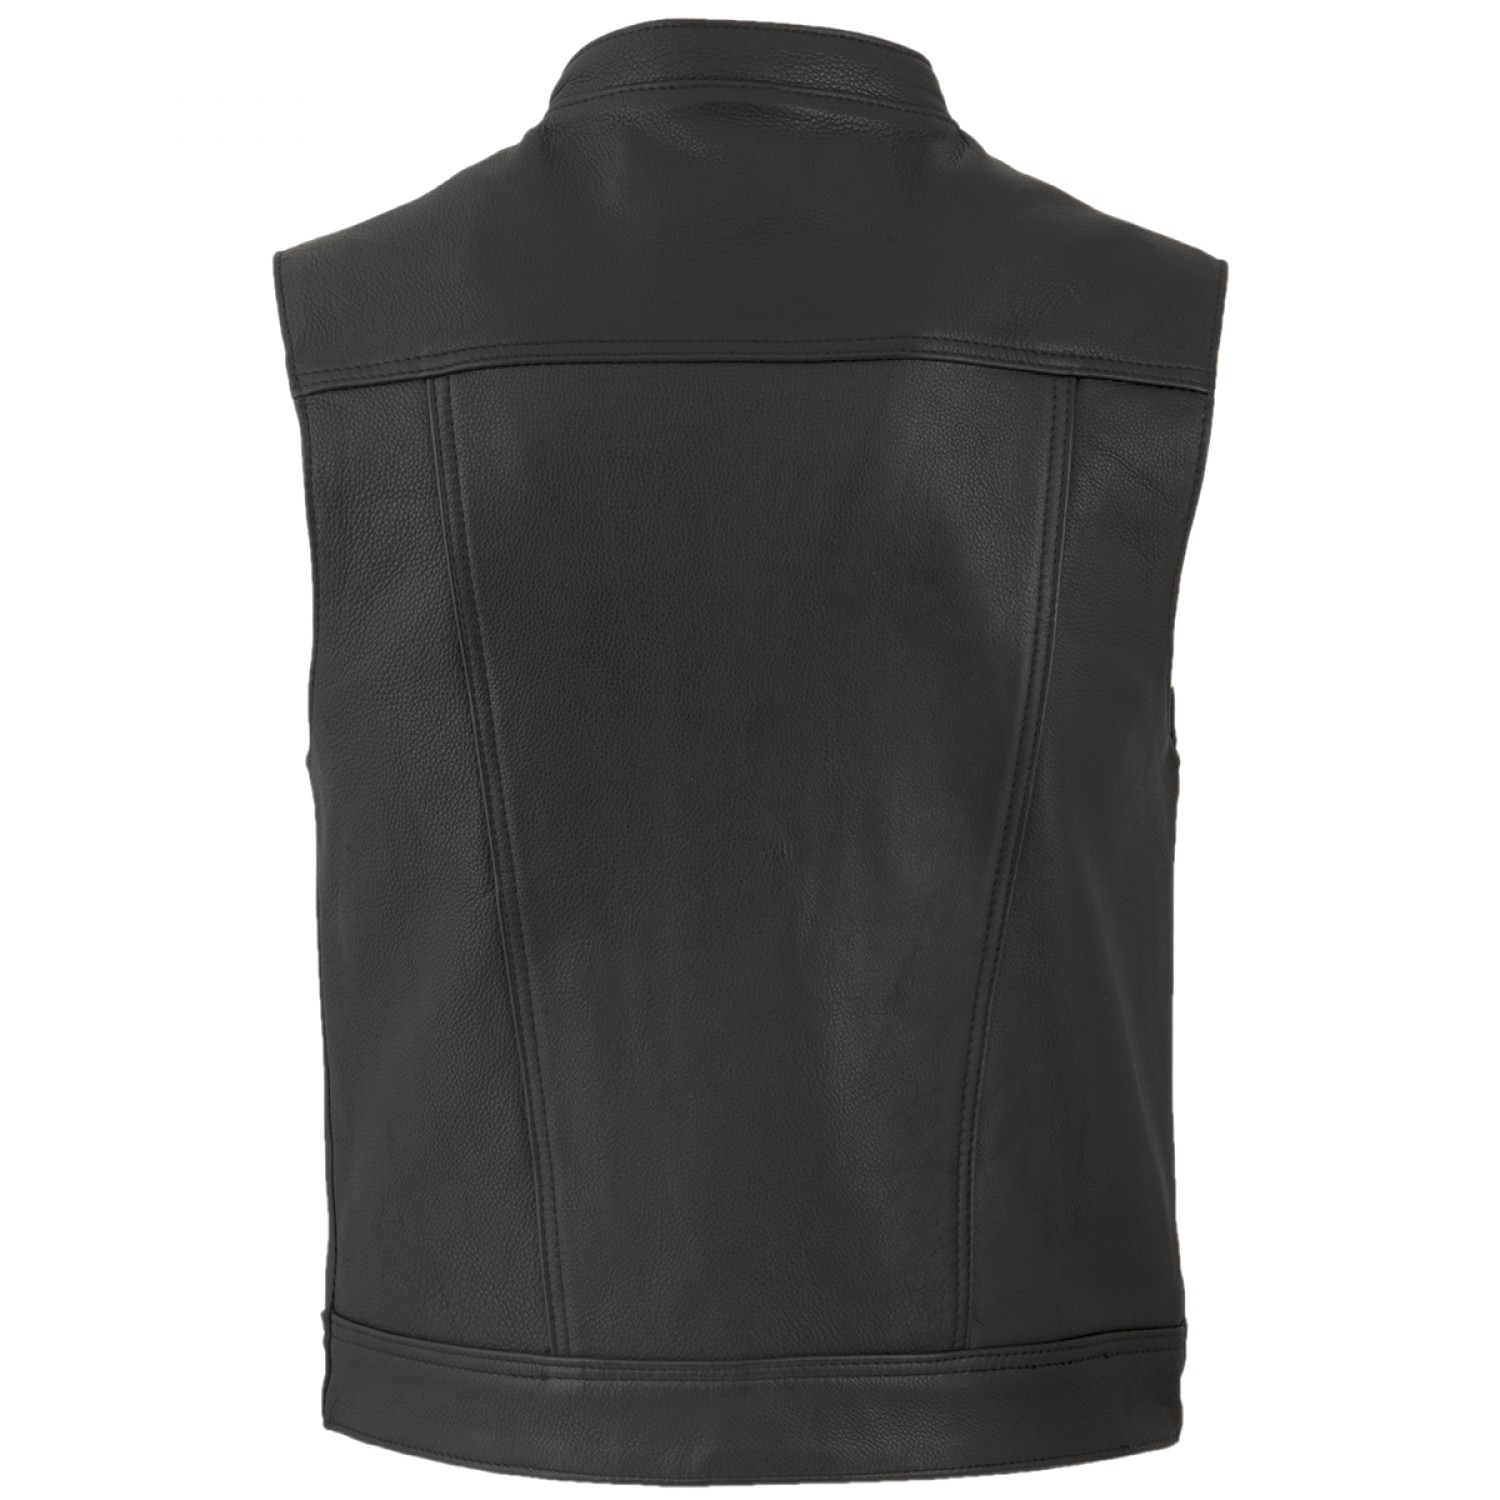 Black Vest PNG Transparent Images Free Download, Vector Files